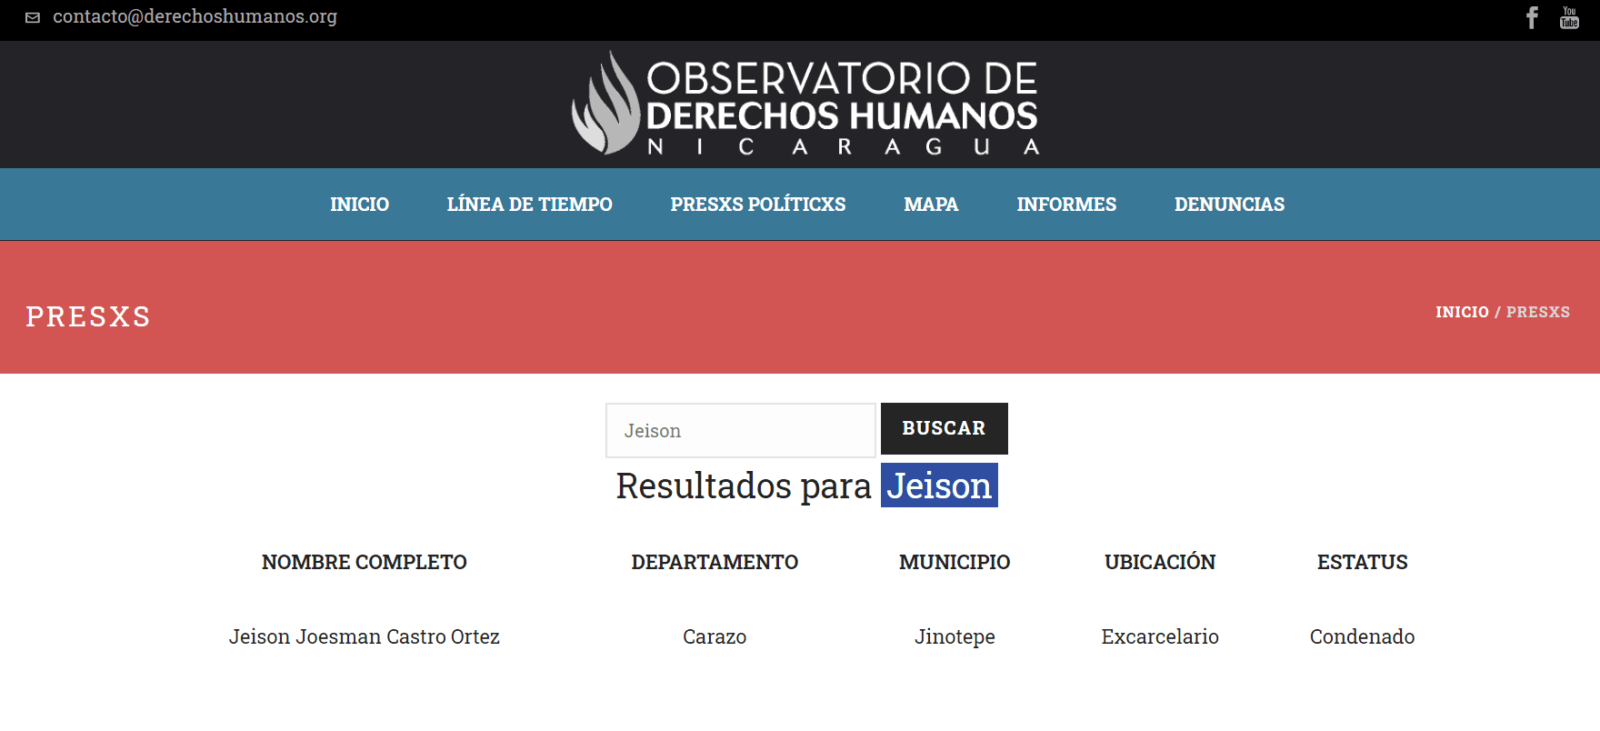 Observatorio-de-Derechos-Humanos-Nicaragua-presos-politicos-Jeison-Castro-Ortez